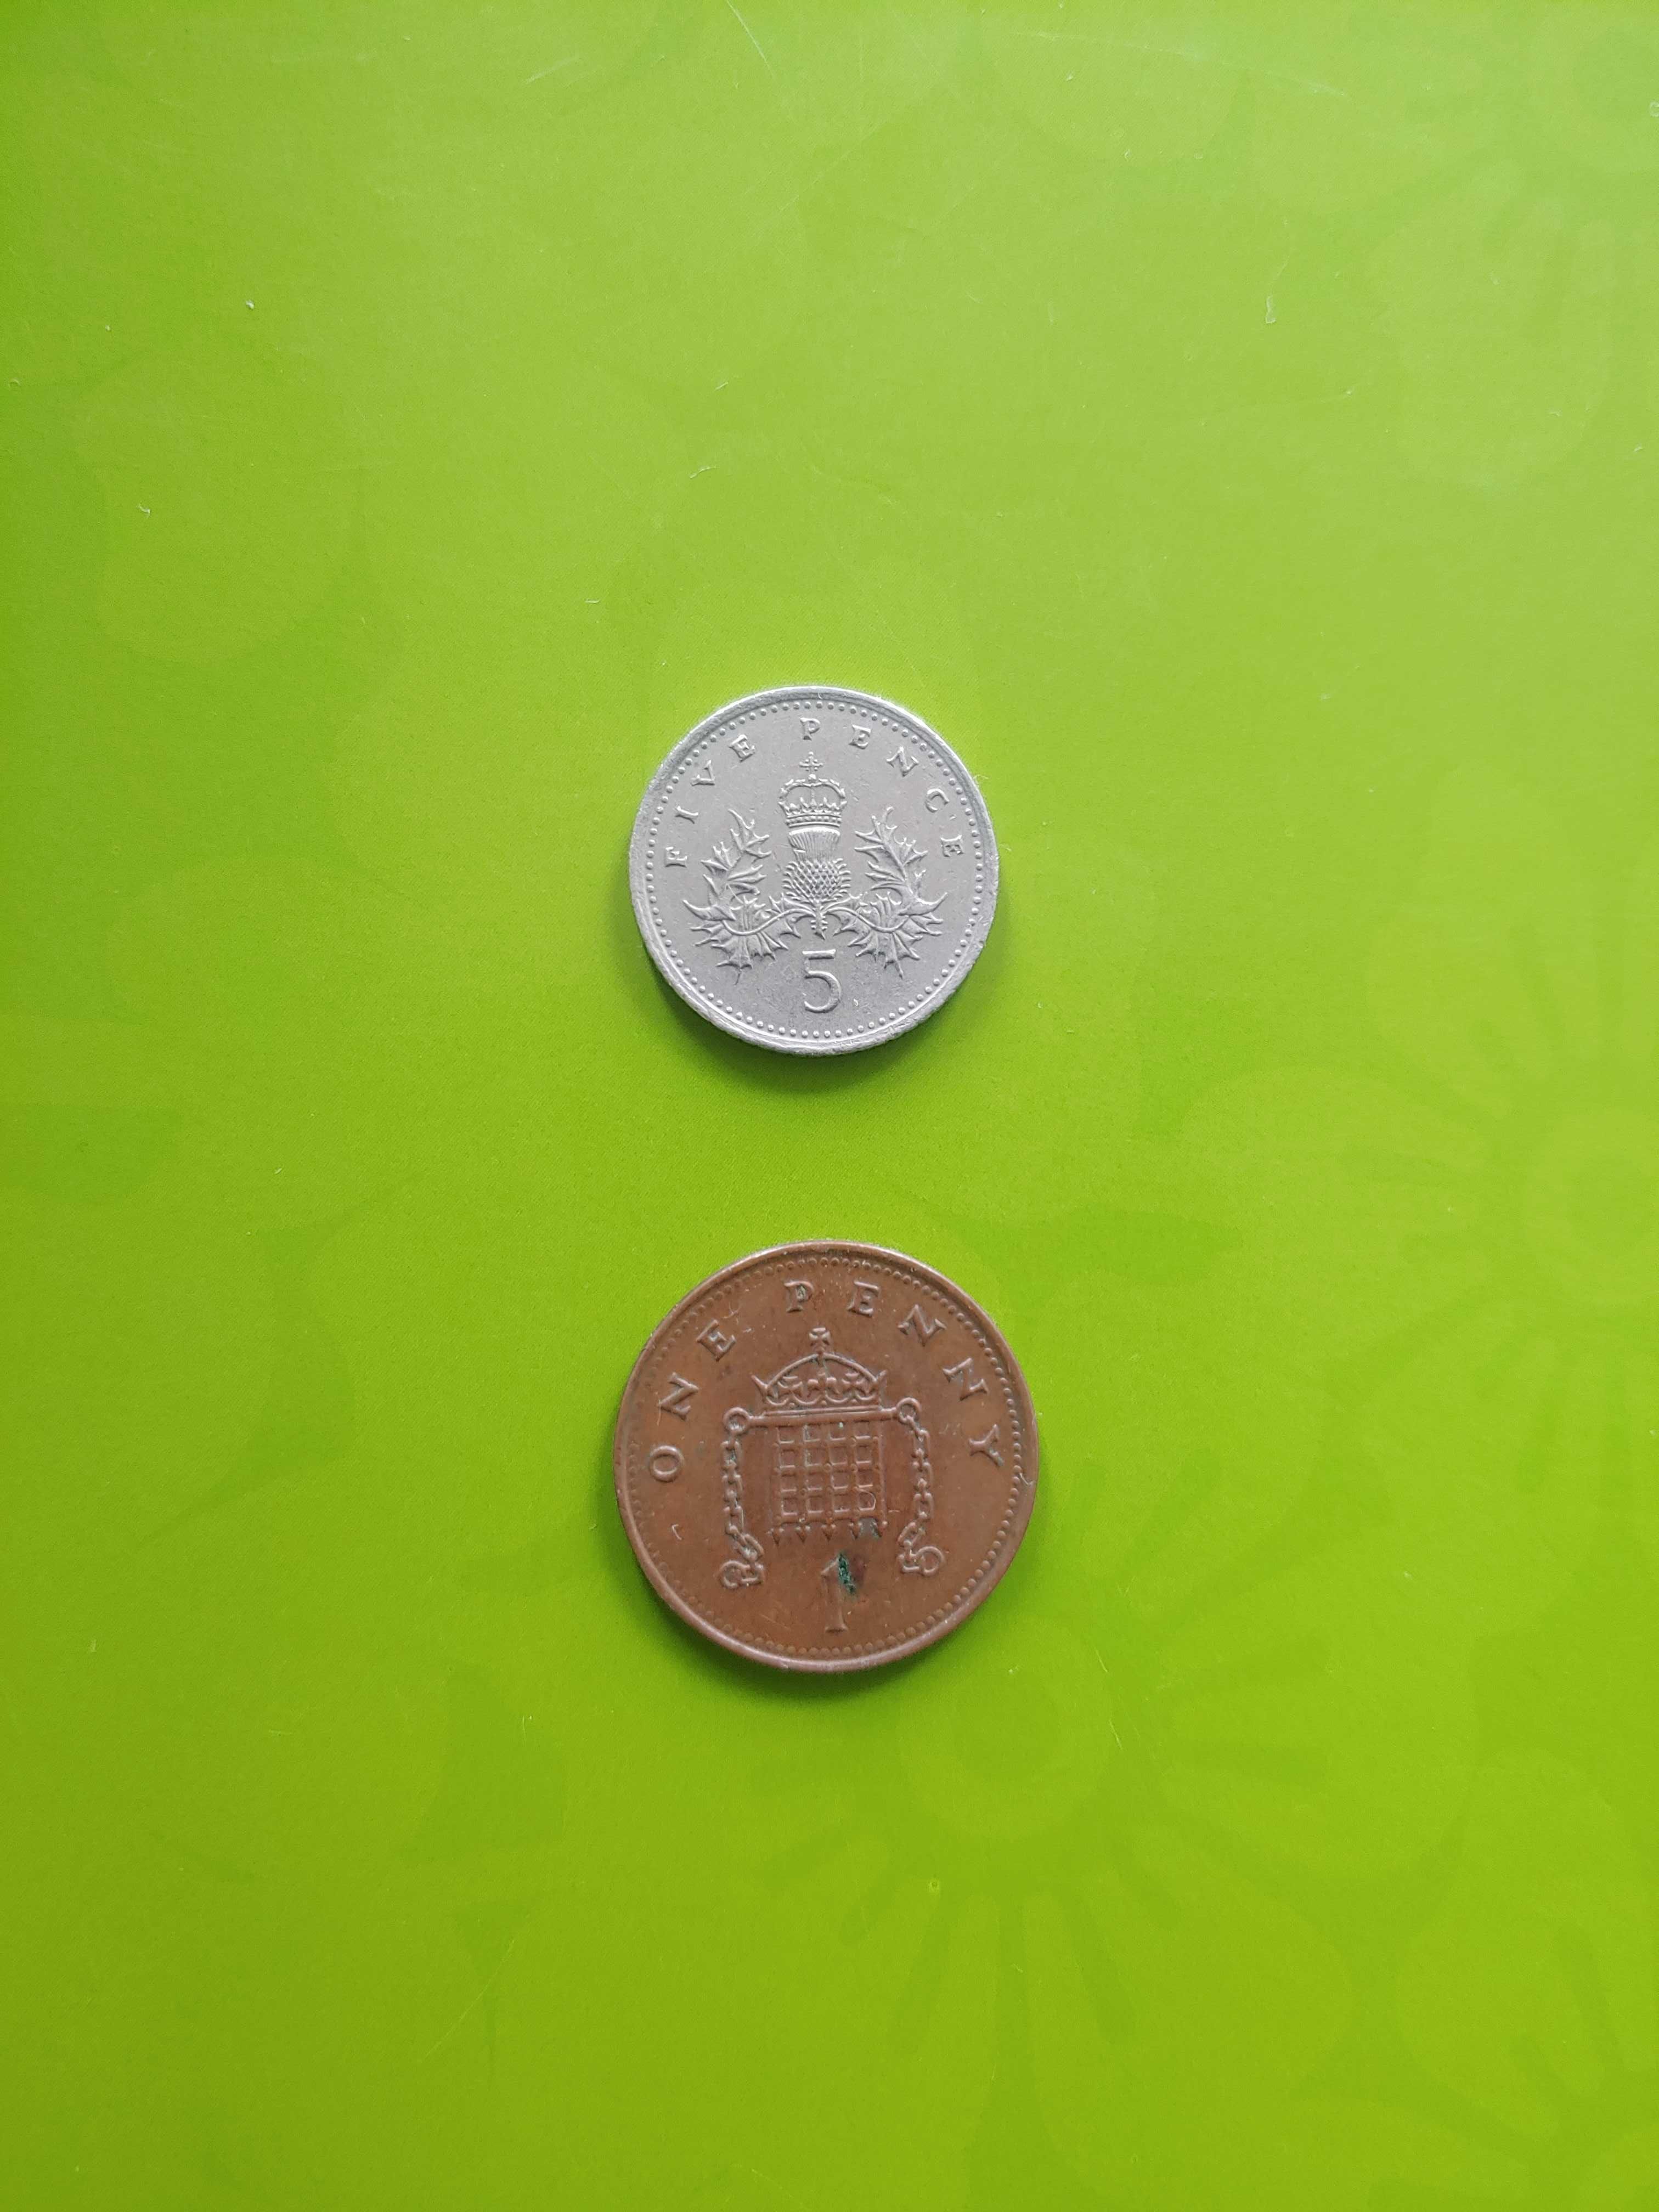 Монеты 1 пенни one penny 2001, 5 пенсов five pence 1992